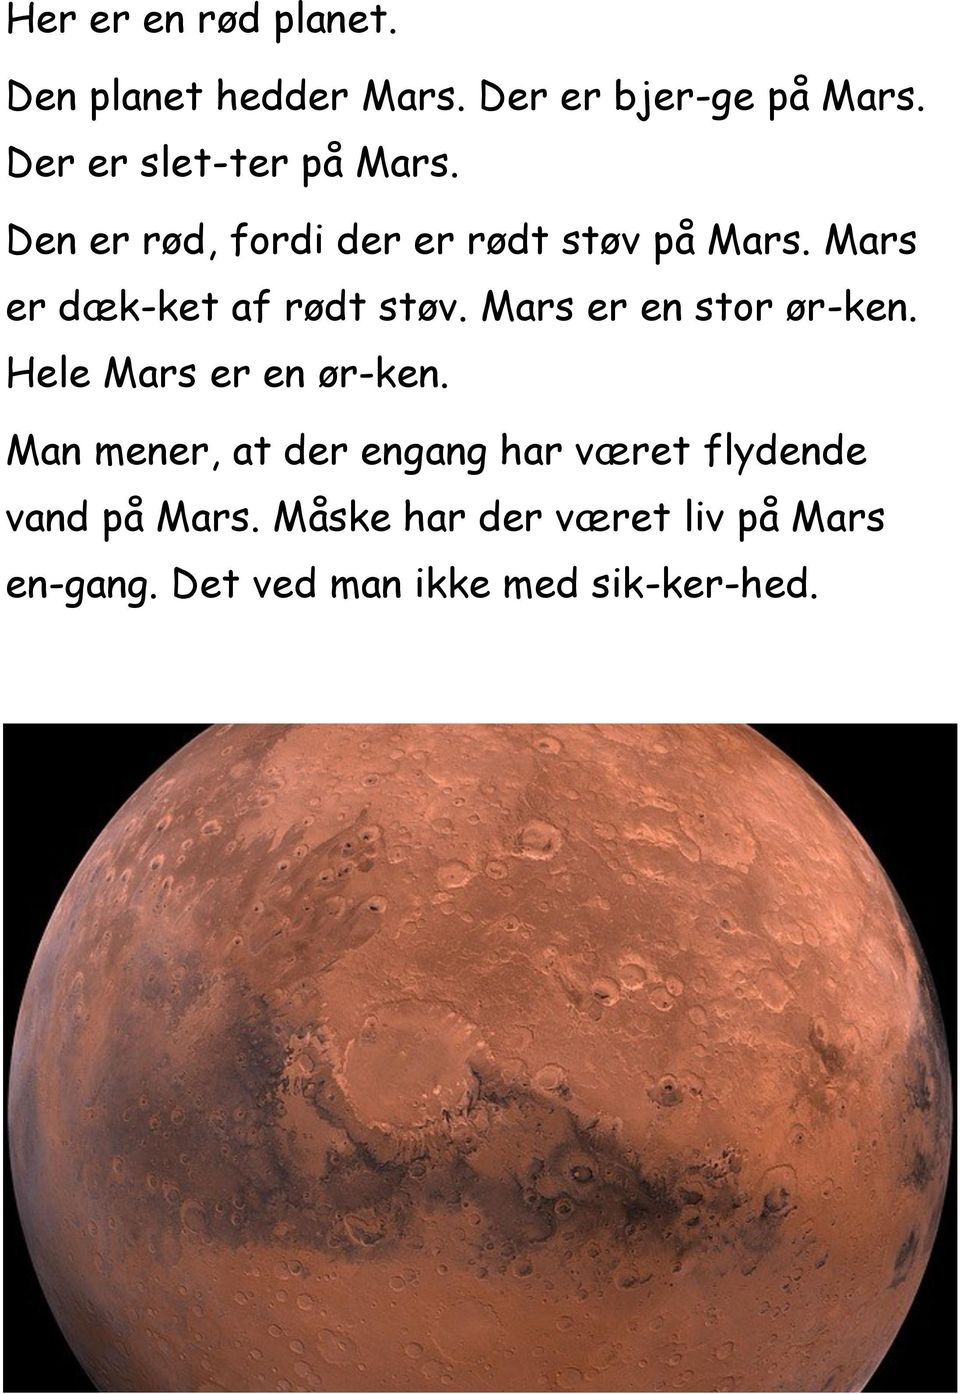 Mars er dæk-ket af rødt støv. Mars er en stor ør-ken. Hele Mars er en ør-ken.